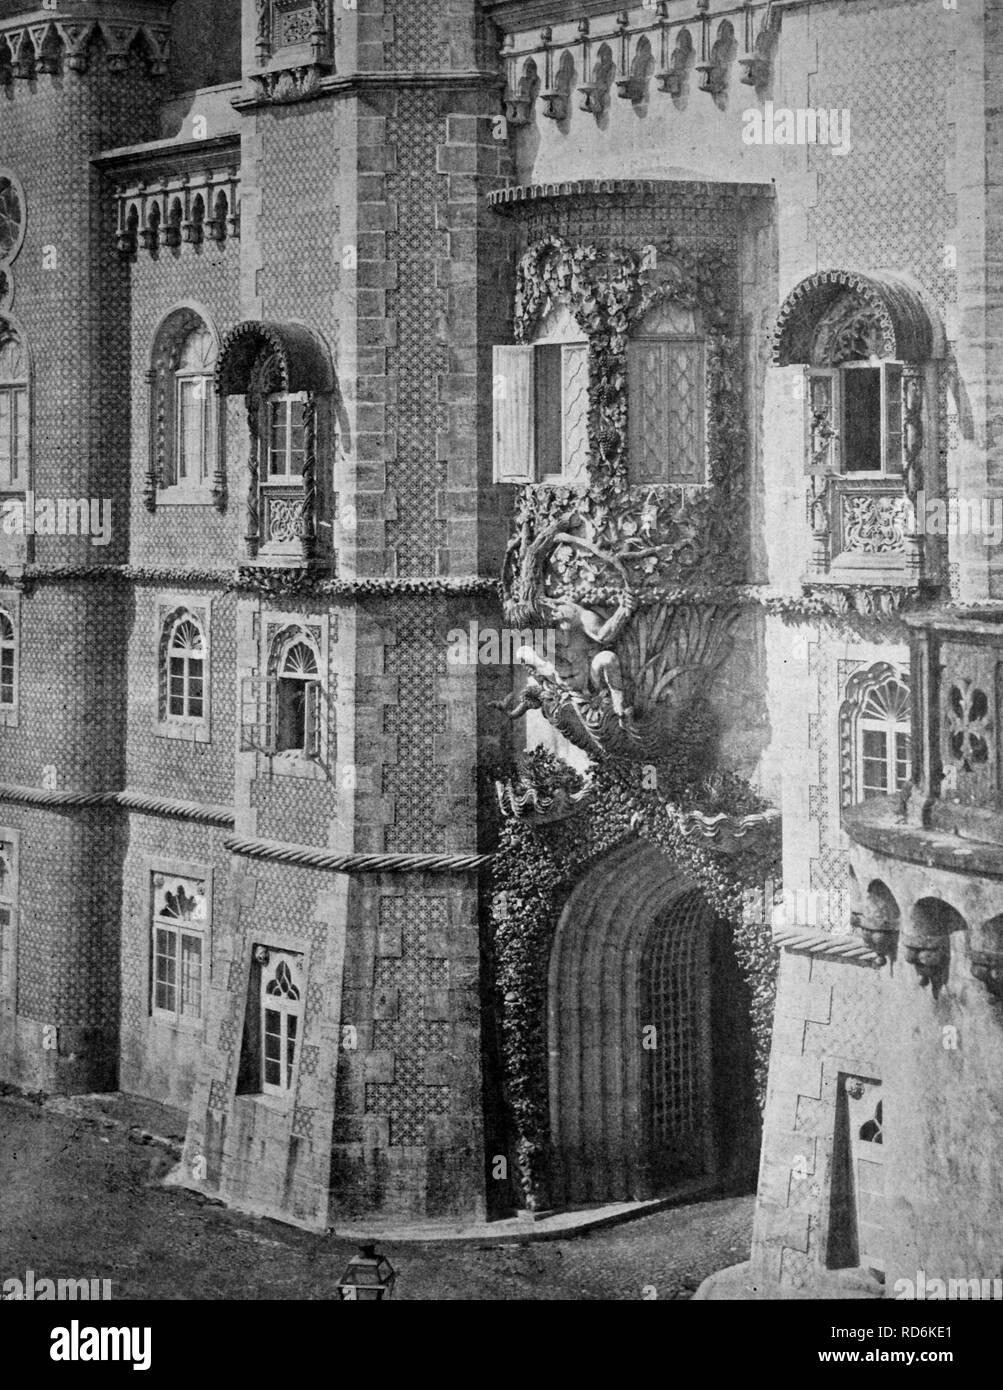 Au début de l'autotype Palais National de Pena, Sentra, UNESCO World Heritage Site, Portugal, tableau historique, 1884 Banque D'Images